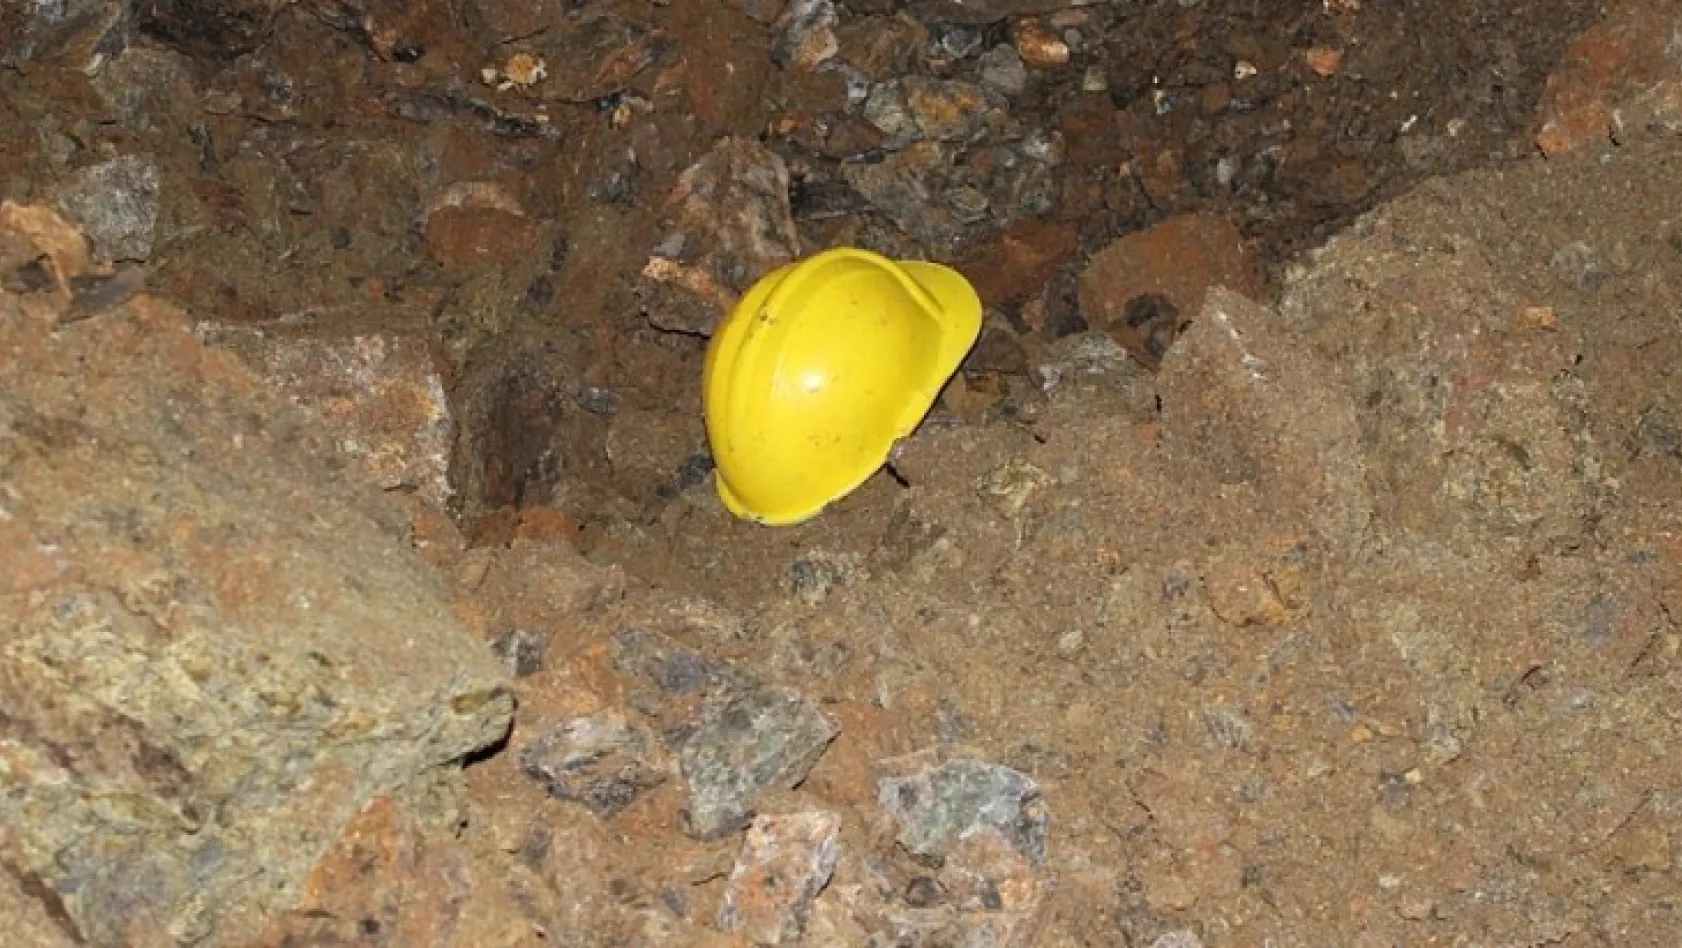 Maden ocağında üzerine kaya düşen işçi öldü